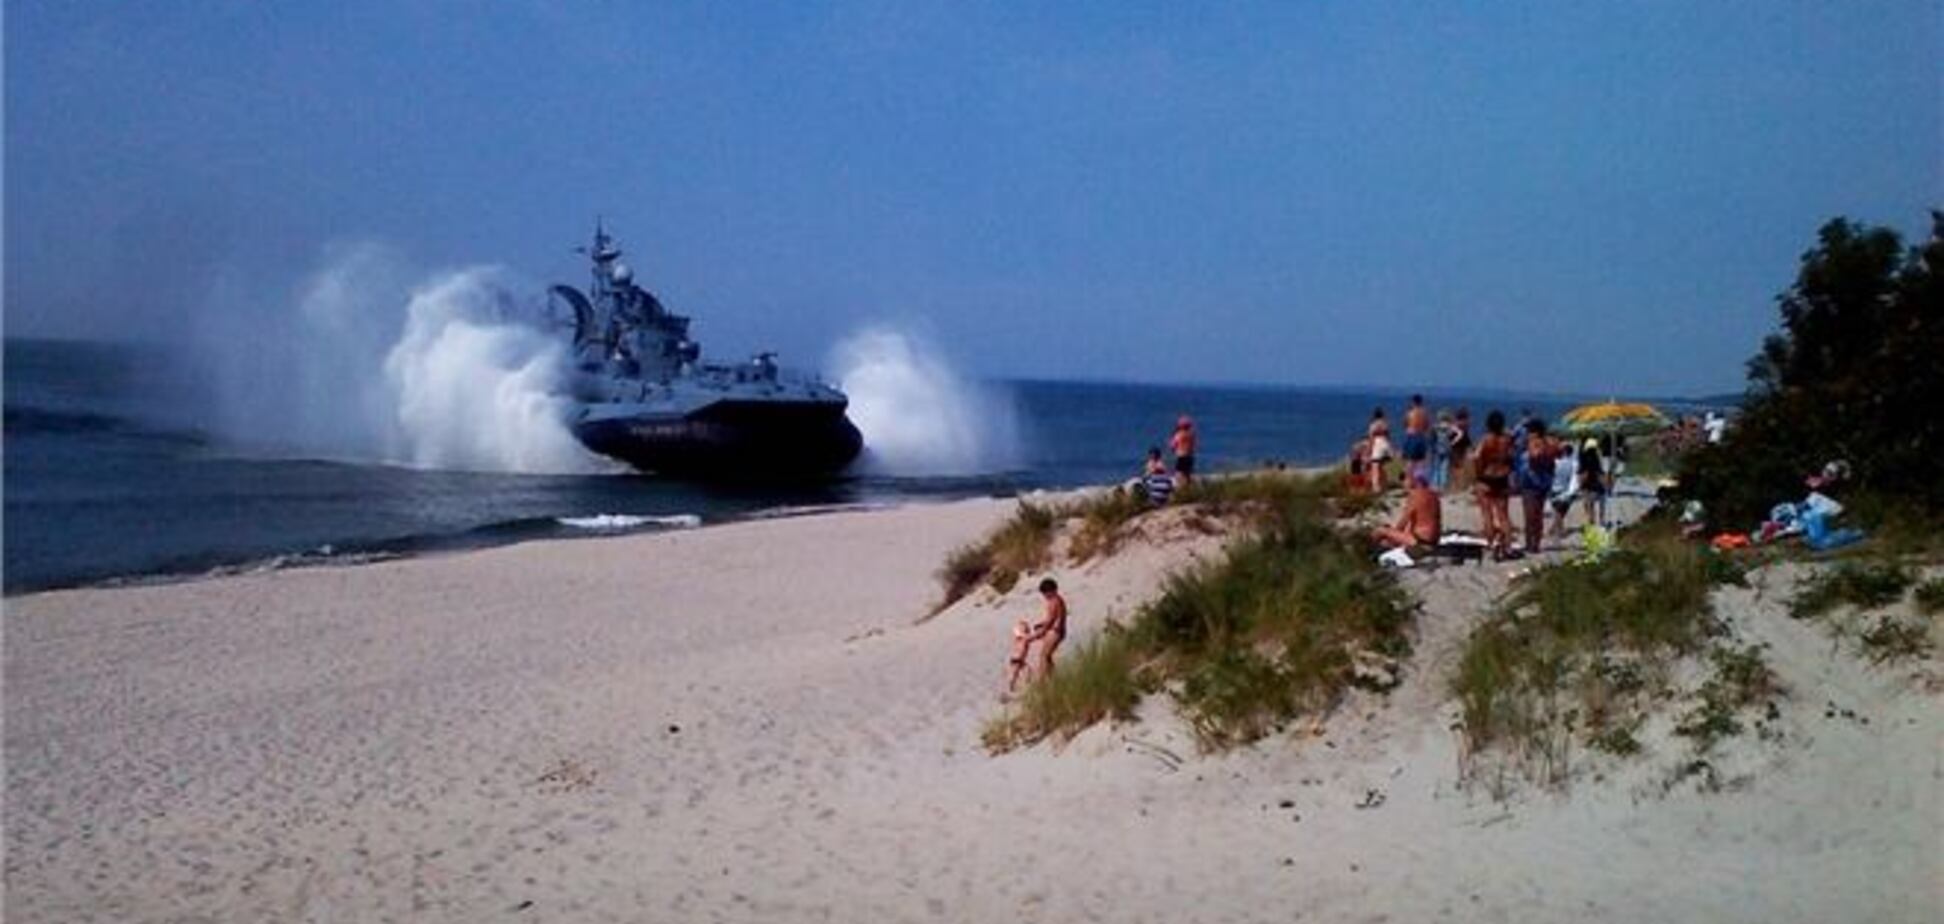 Десантный корабль, причаливший на пляже в России, распугал отдыхающих